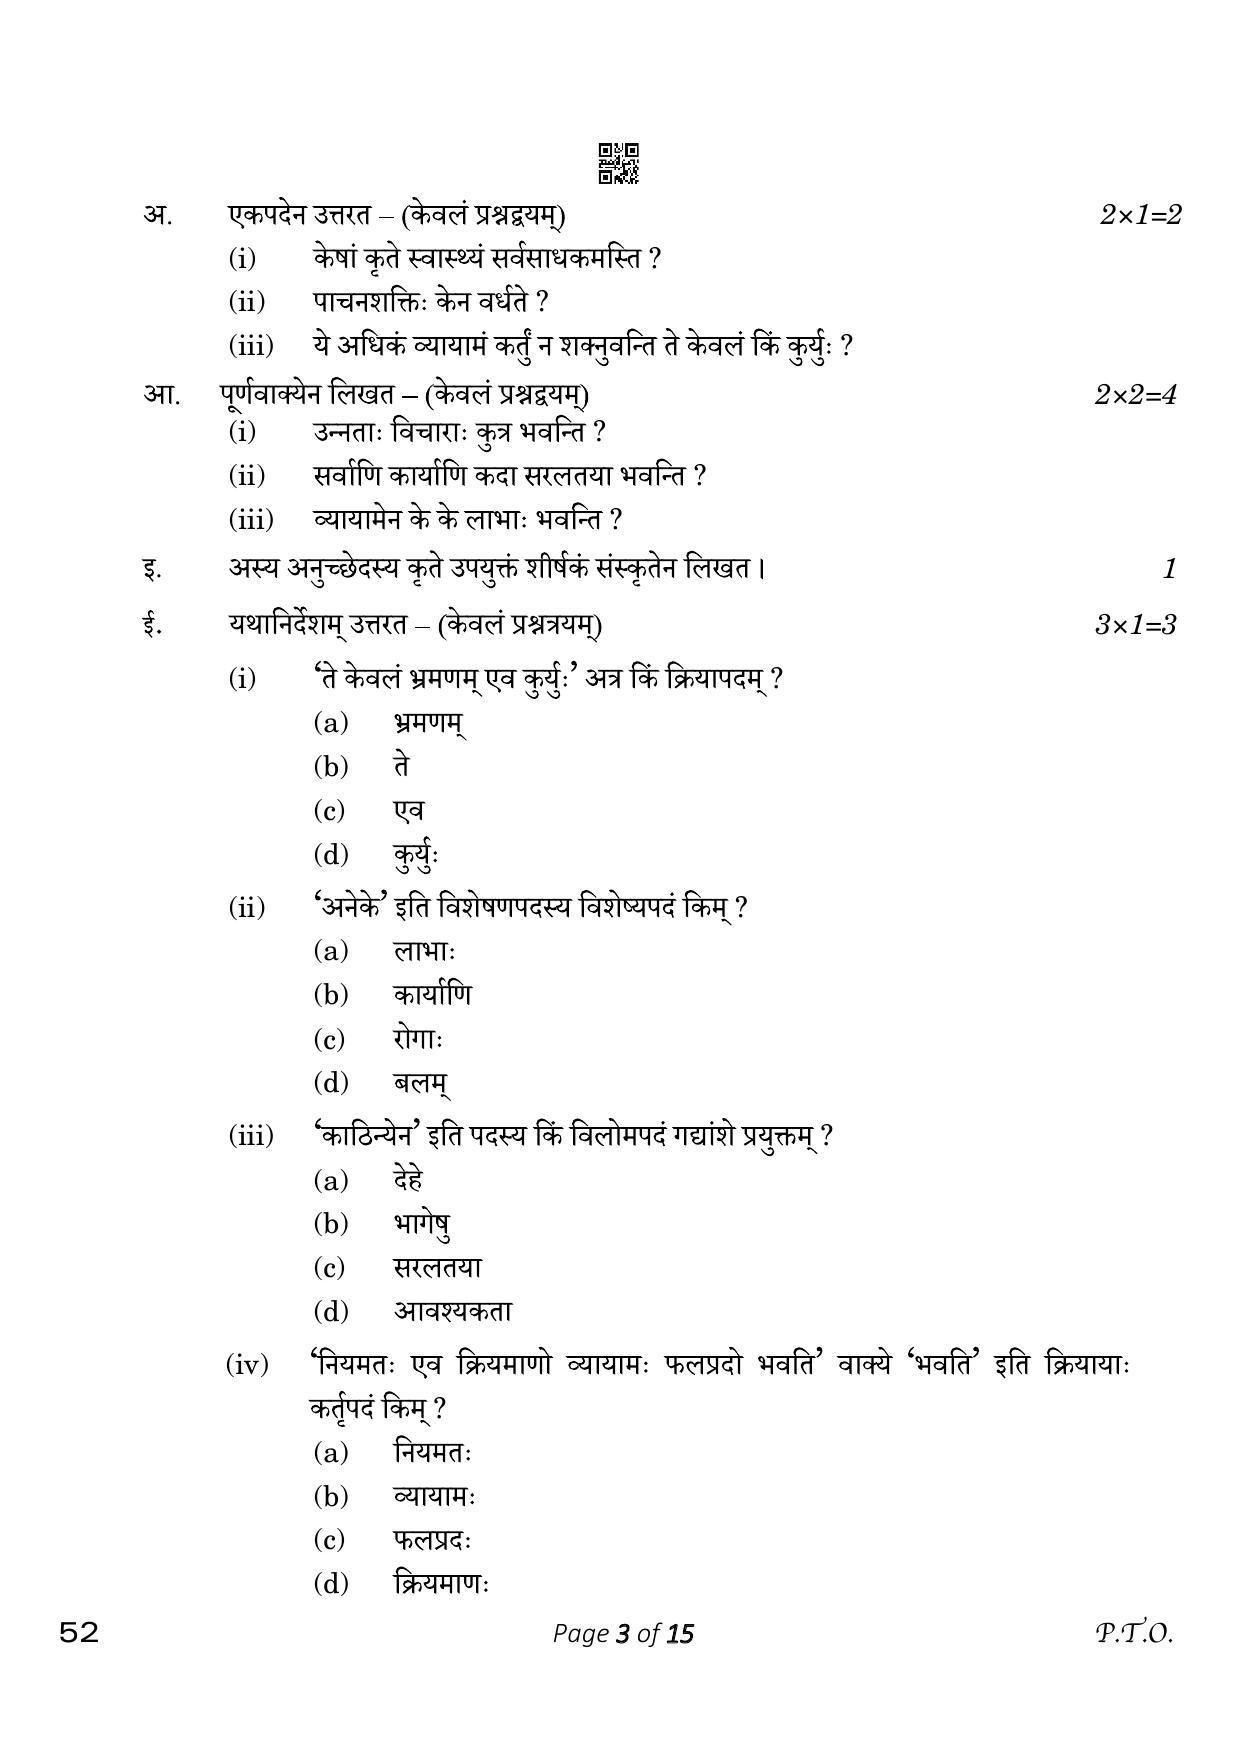 CBSE Class 10 Sanskrit (Compartment) 2023 Question Paper - Page 3